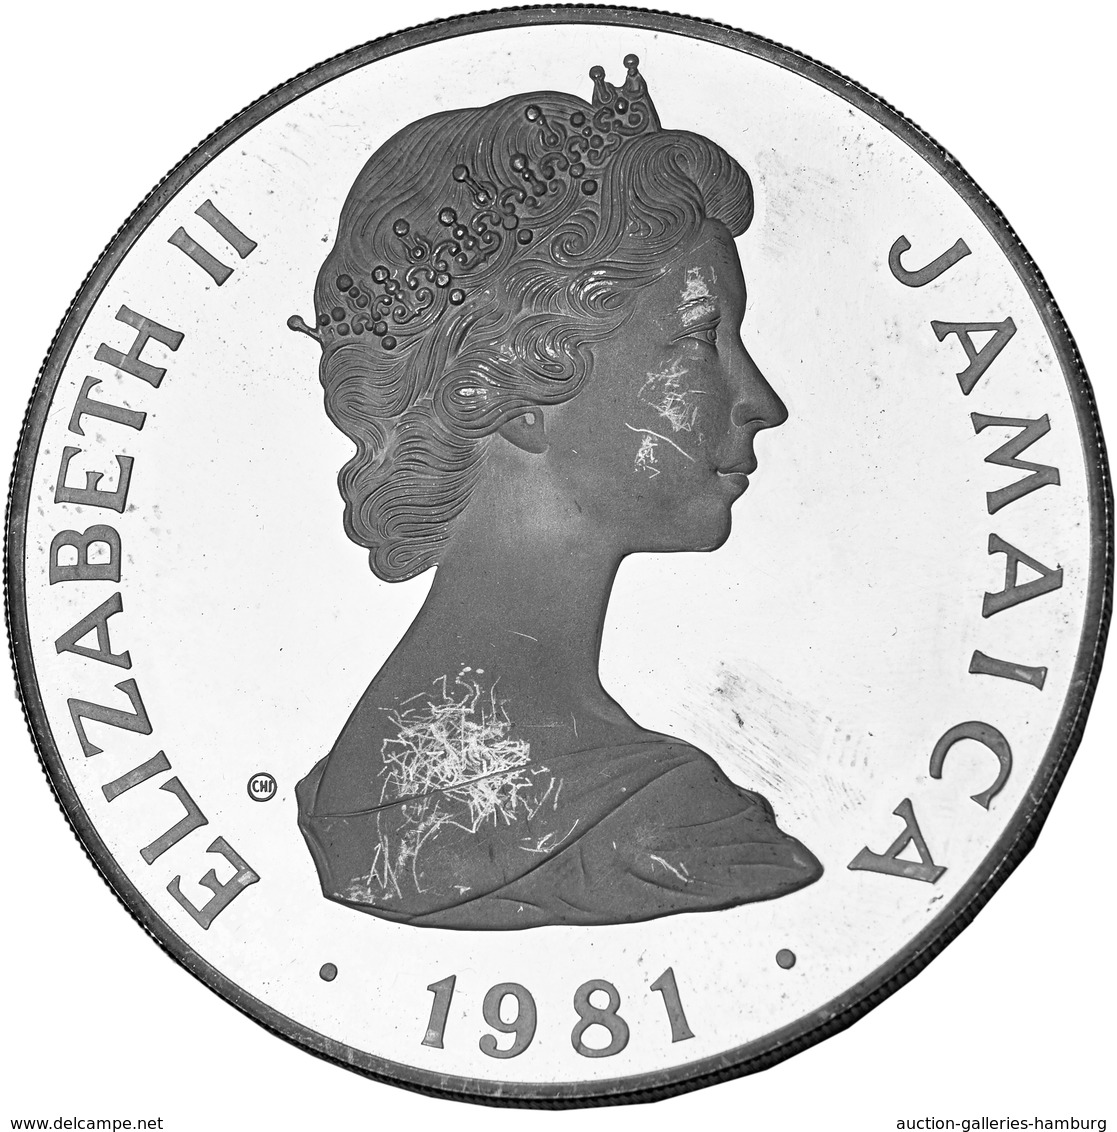 Alle Welt: 1898-2014, Partie von überwiegend Silbermünzen mit u.a. diversen Preußen-Stücken aus dem